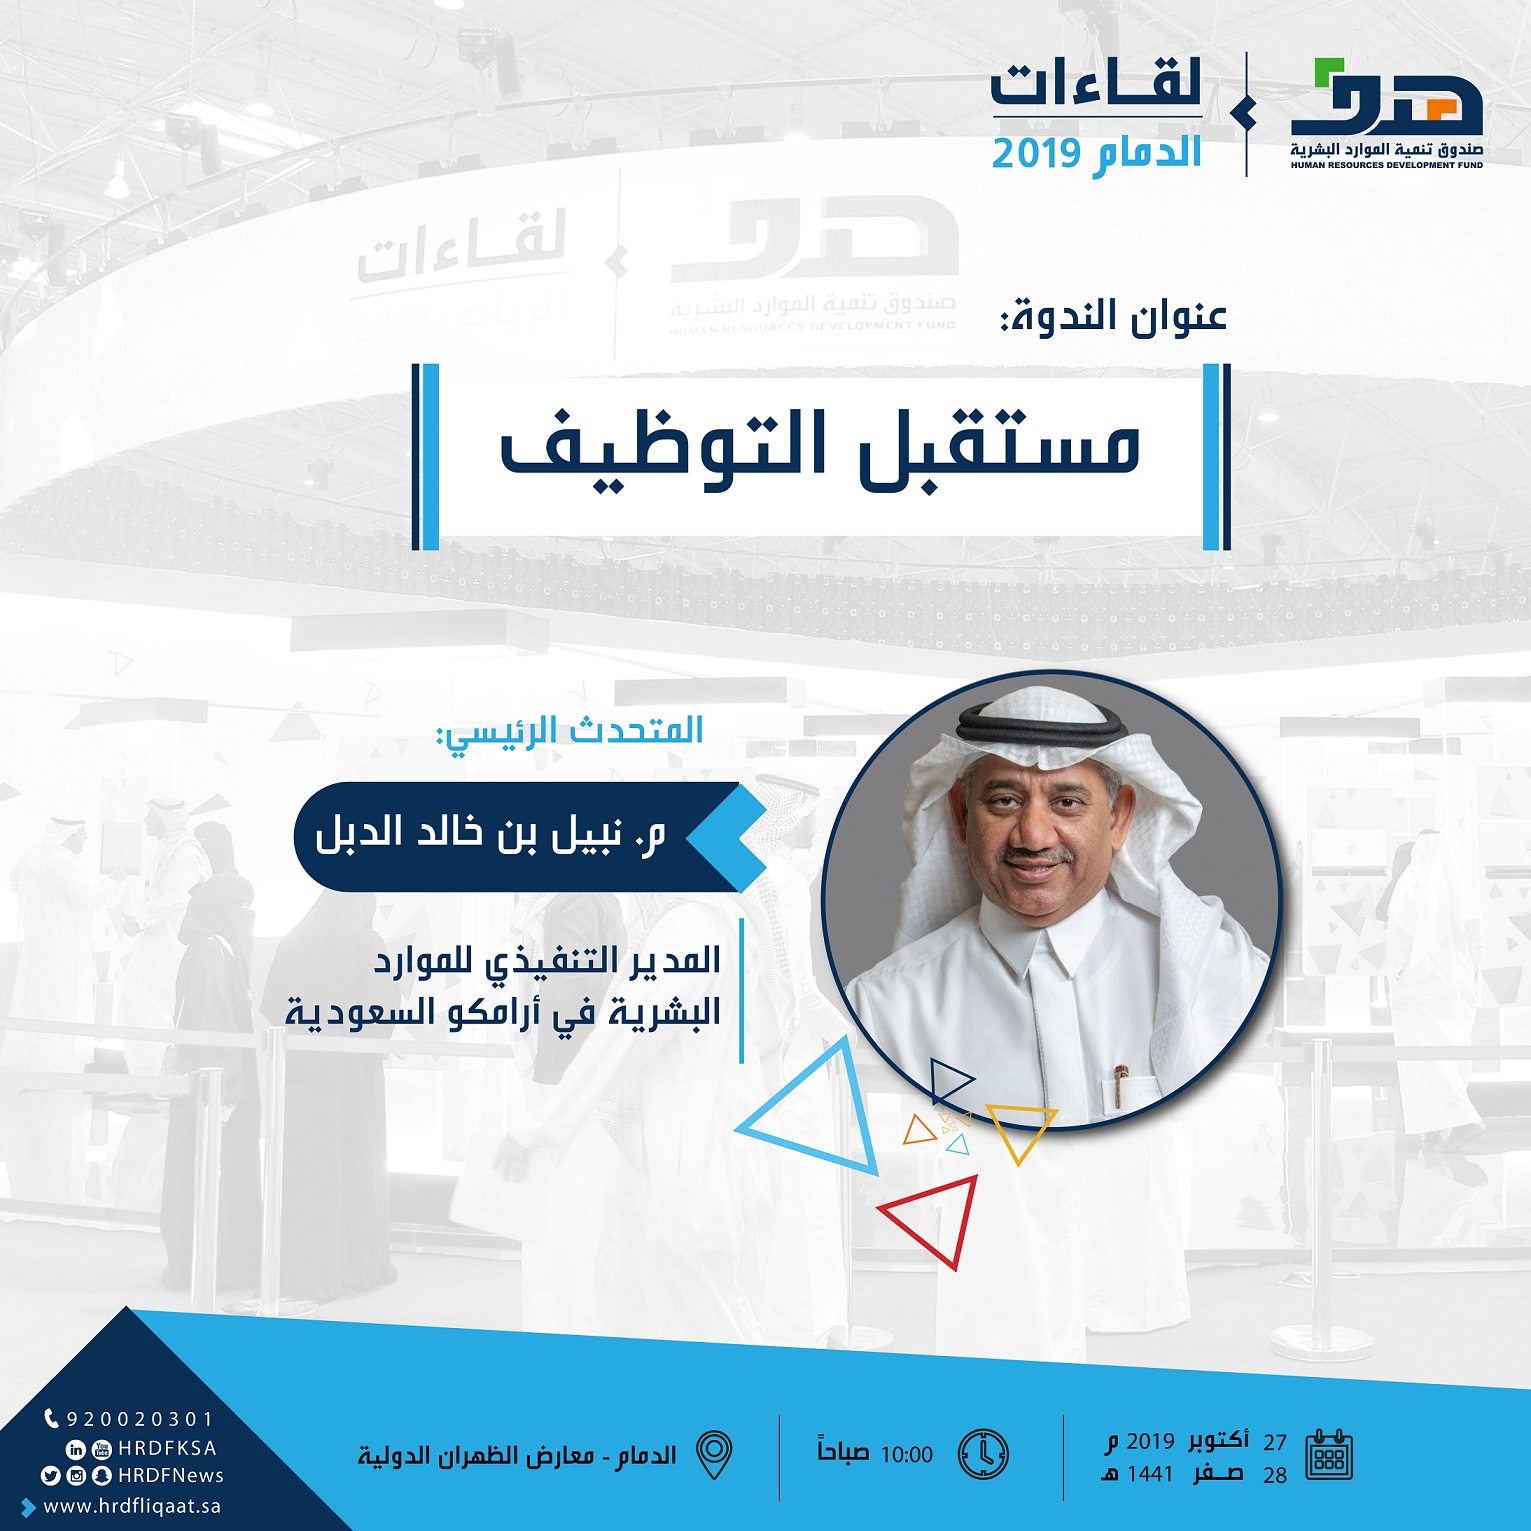 الأحد المدير التنفيذي للموارد البشرية في أرامكو السعودية يتحدث حول مستقبل التوظيف في ملتقى الدمام صحيفة أصداء الخليج